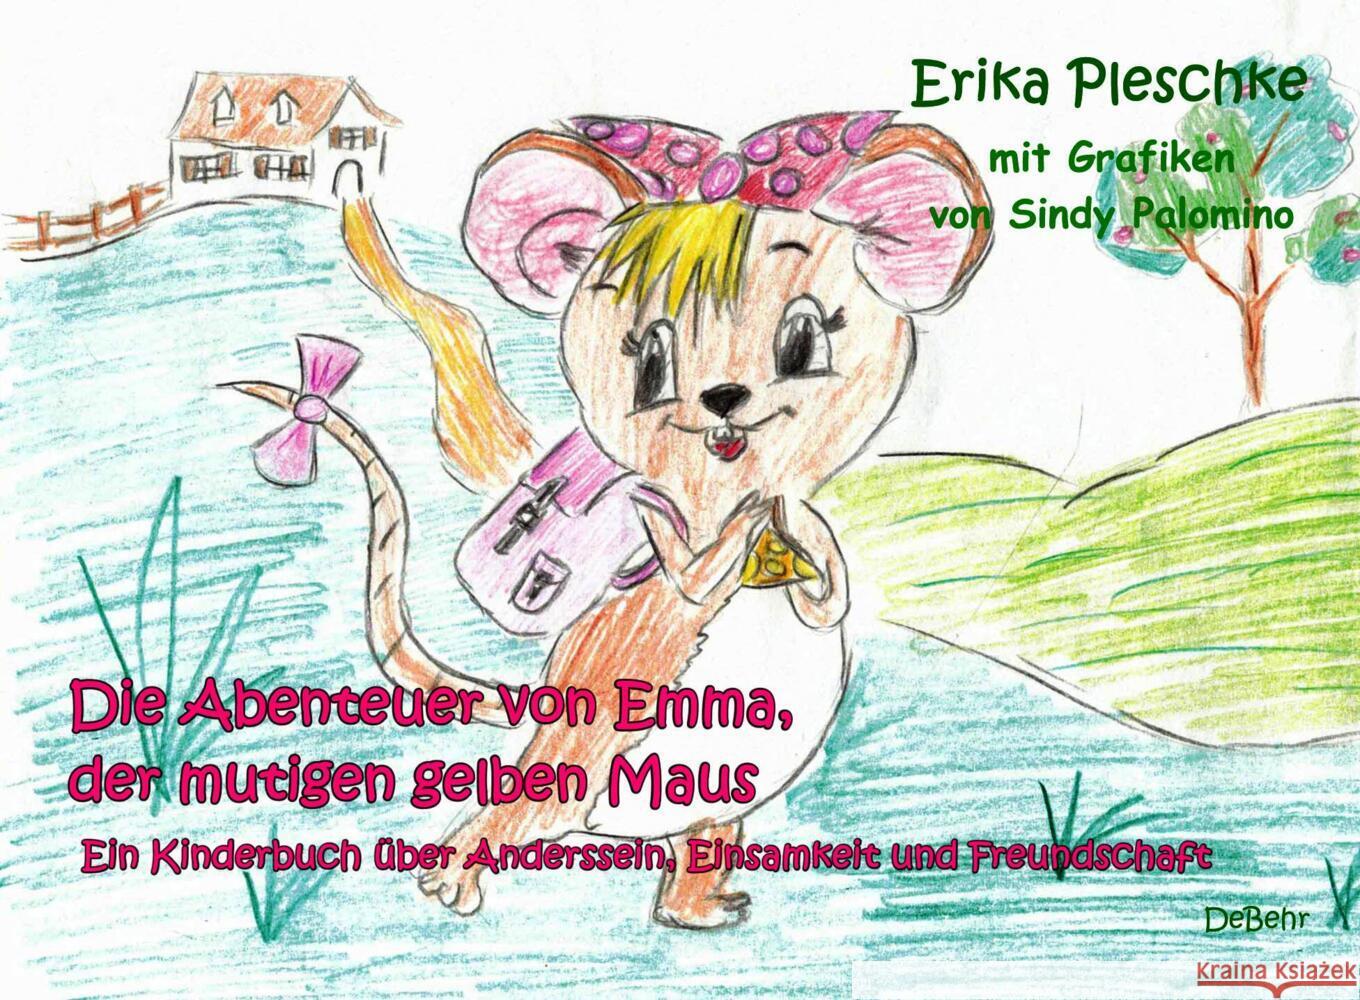 Die Abenteuer von Emma, der mutigen gelben Maus - Ein Kinderbuch über Anderssein, Einsamkeit und Freundschaft Pleschke, Erika 9783957538628